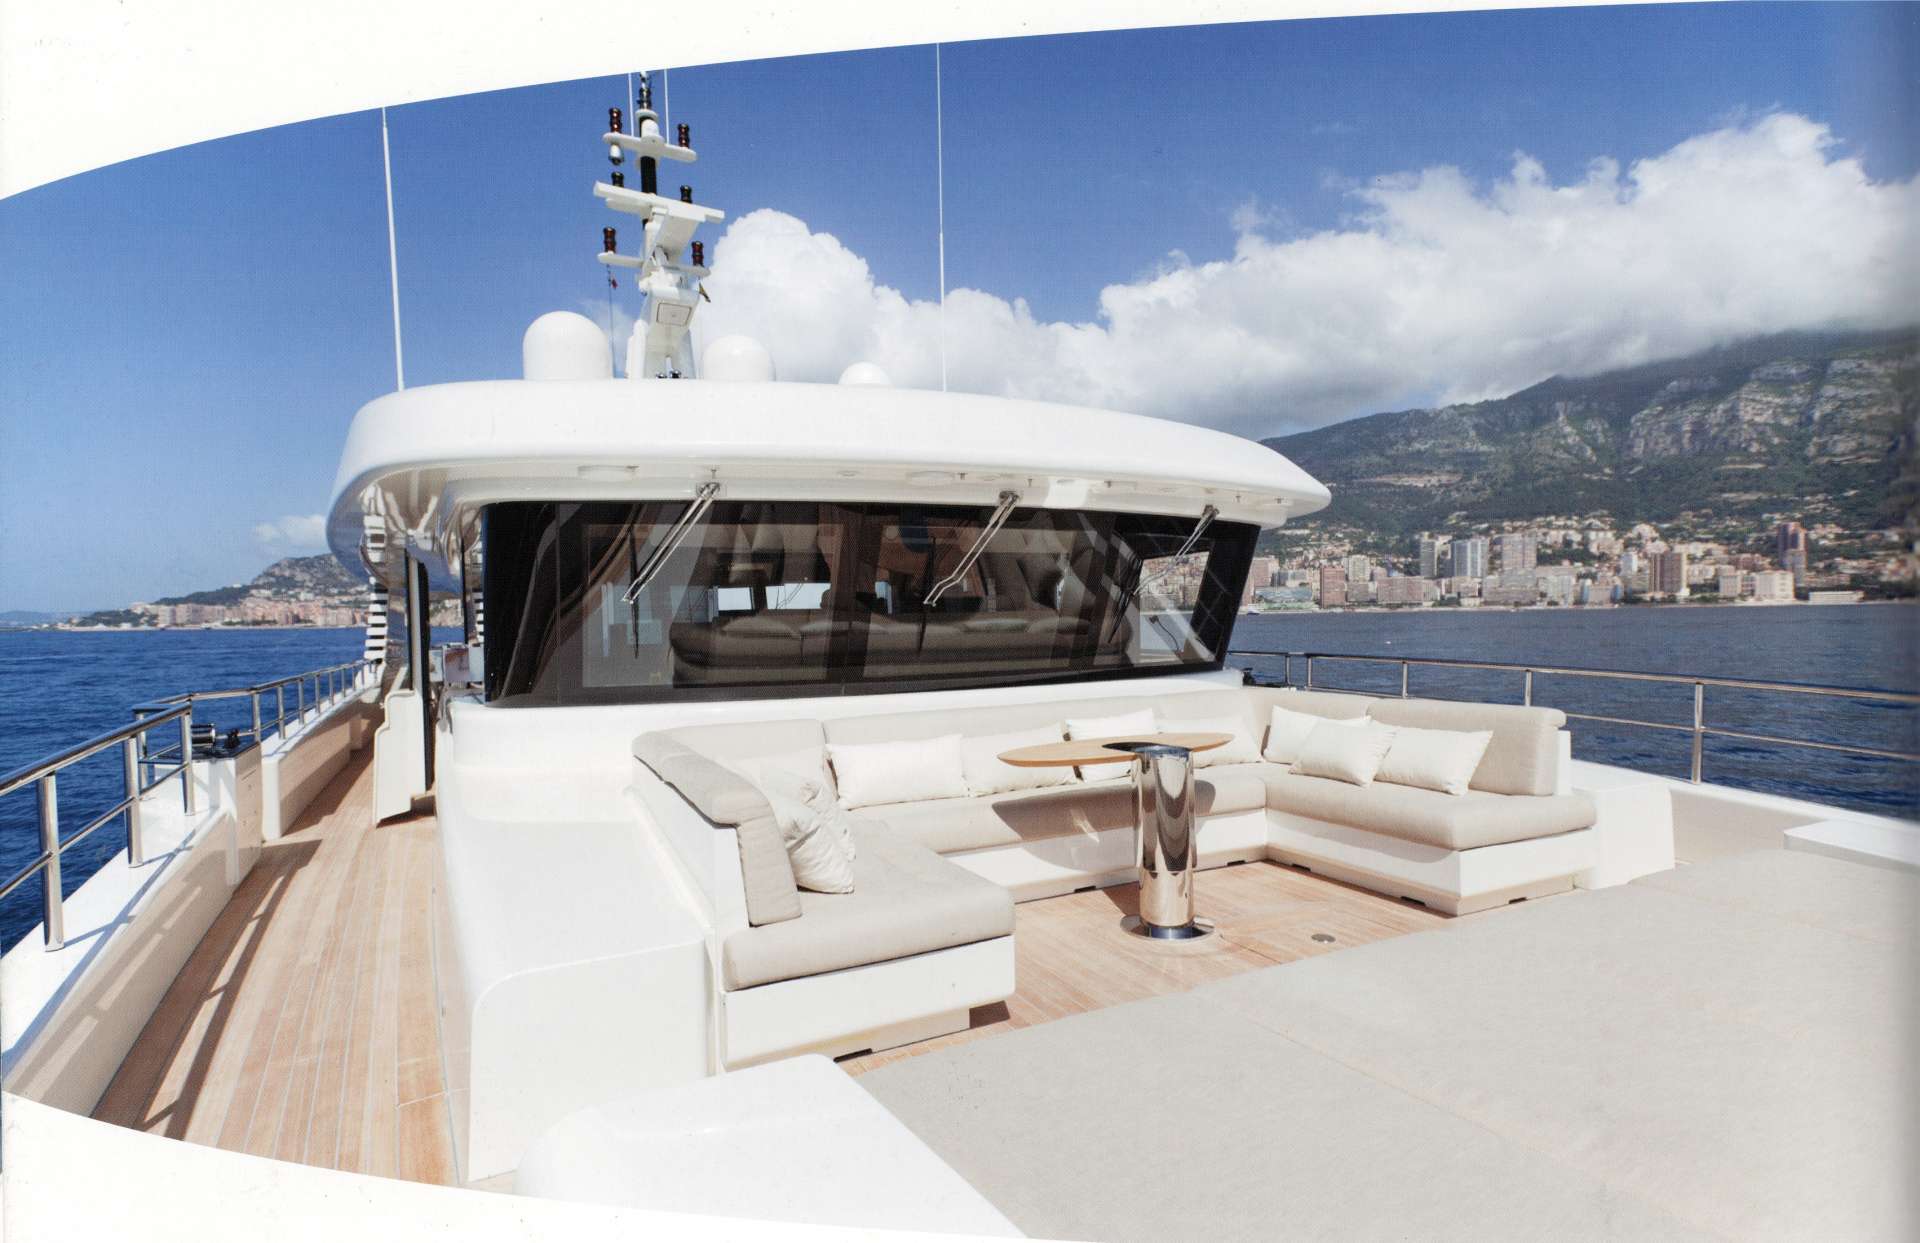 aslec 4 - Yacht Charter France & Boat hire in Fr. Riviera & Tyrrhenian Sea 2